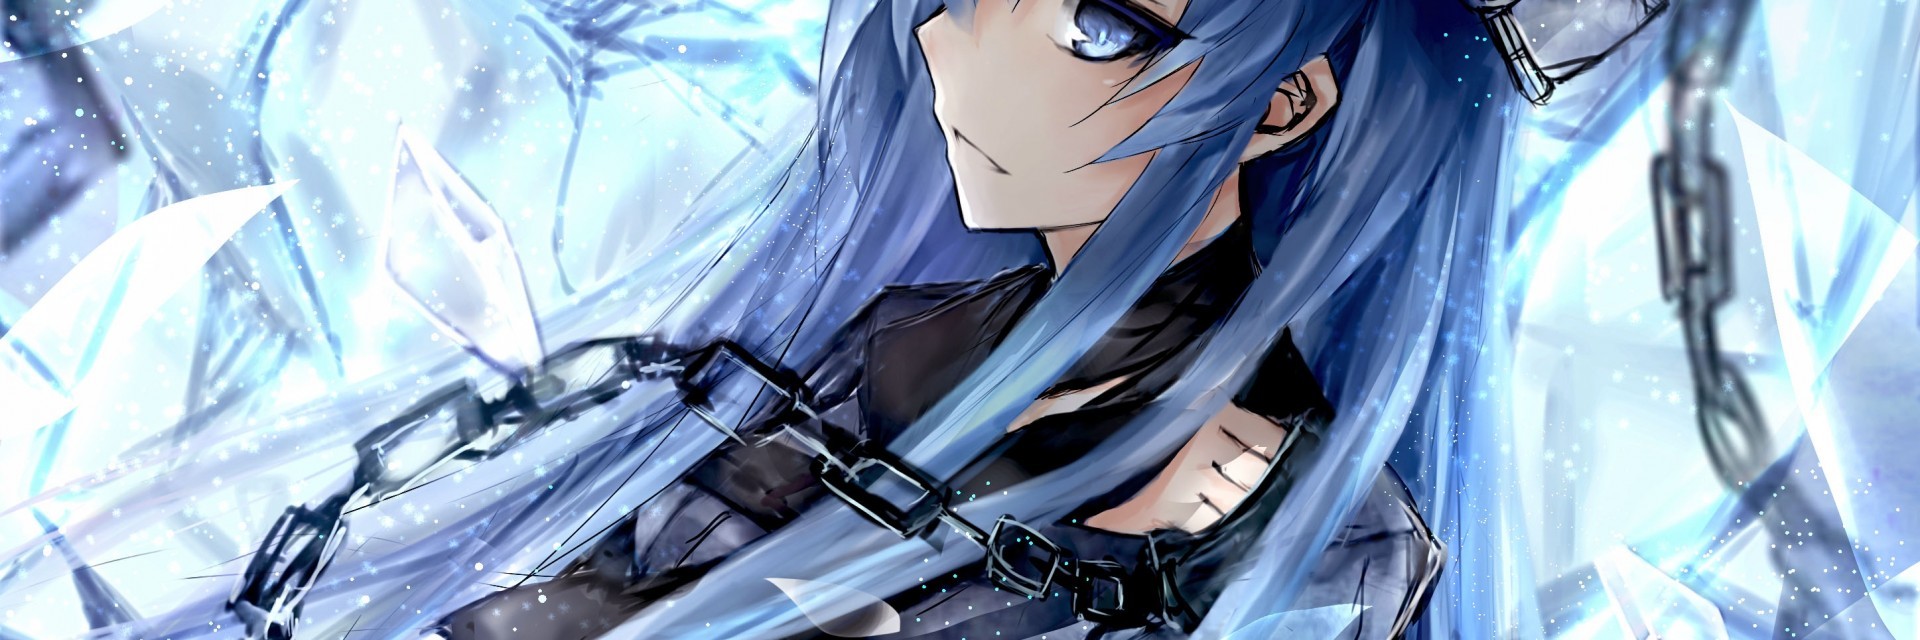 Akame Ga Kill, Esdeath, Hat, Chains, Blue Hair, Profile - Akame Ga Kill Esdeath - HD Wallpaper 